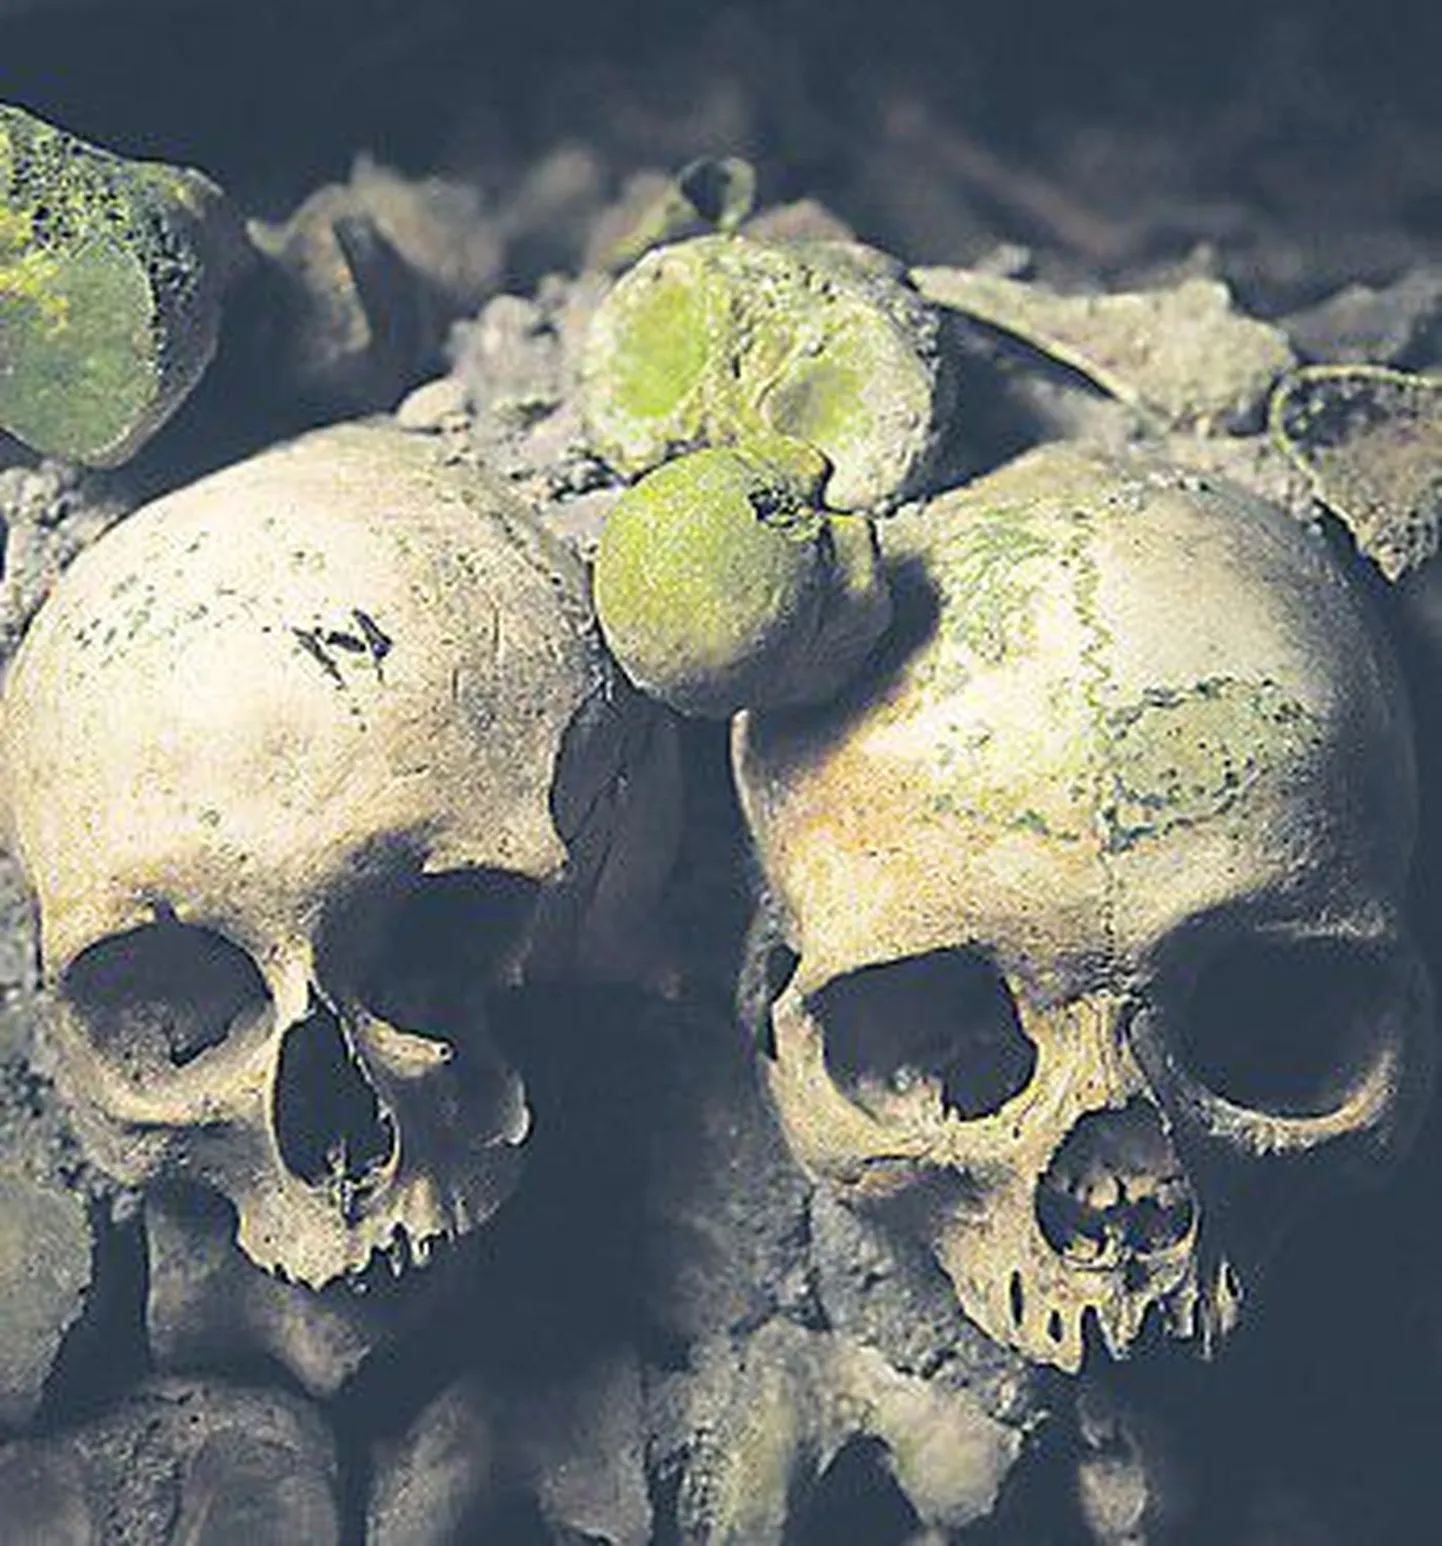 Порошок из человеческих черепов пару столетий назад можно было запросто приобрести в аптеках.